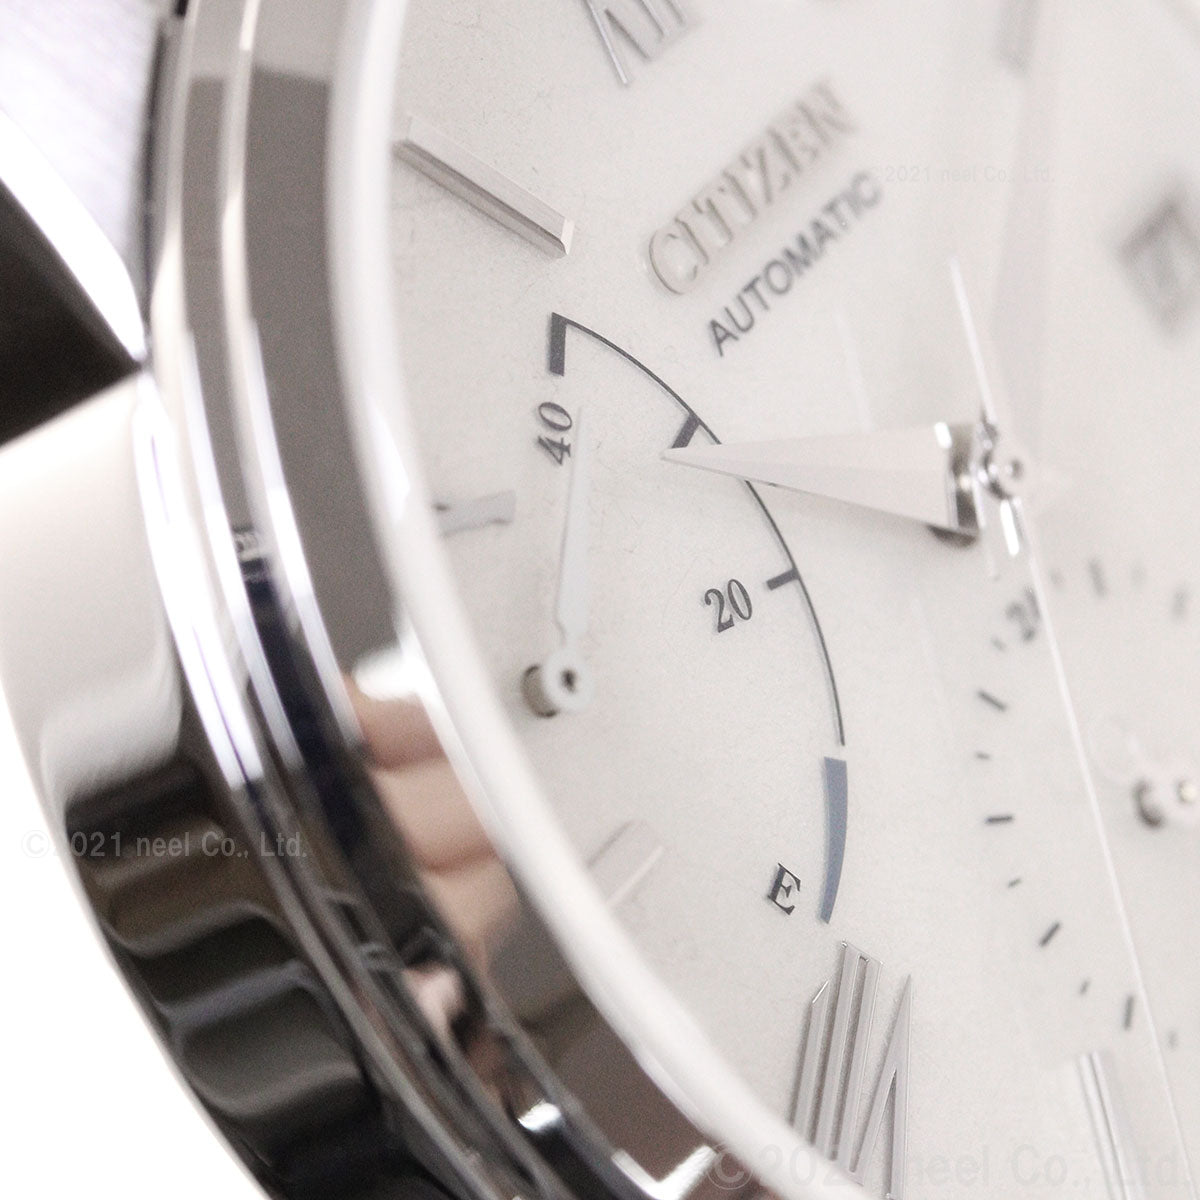 シチズンコレクション CITIZEN COLLECTION メカニカル 銀箔漆文字板 自動巻き 機械式 腕時計 メンズ NB3020-08A